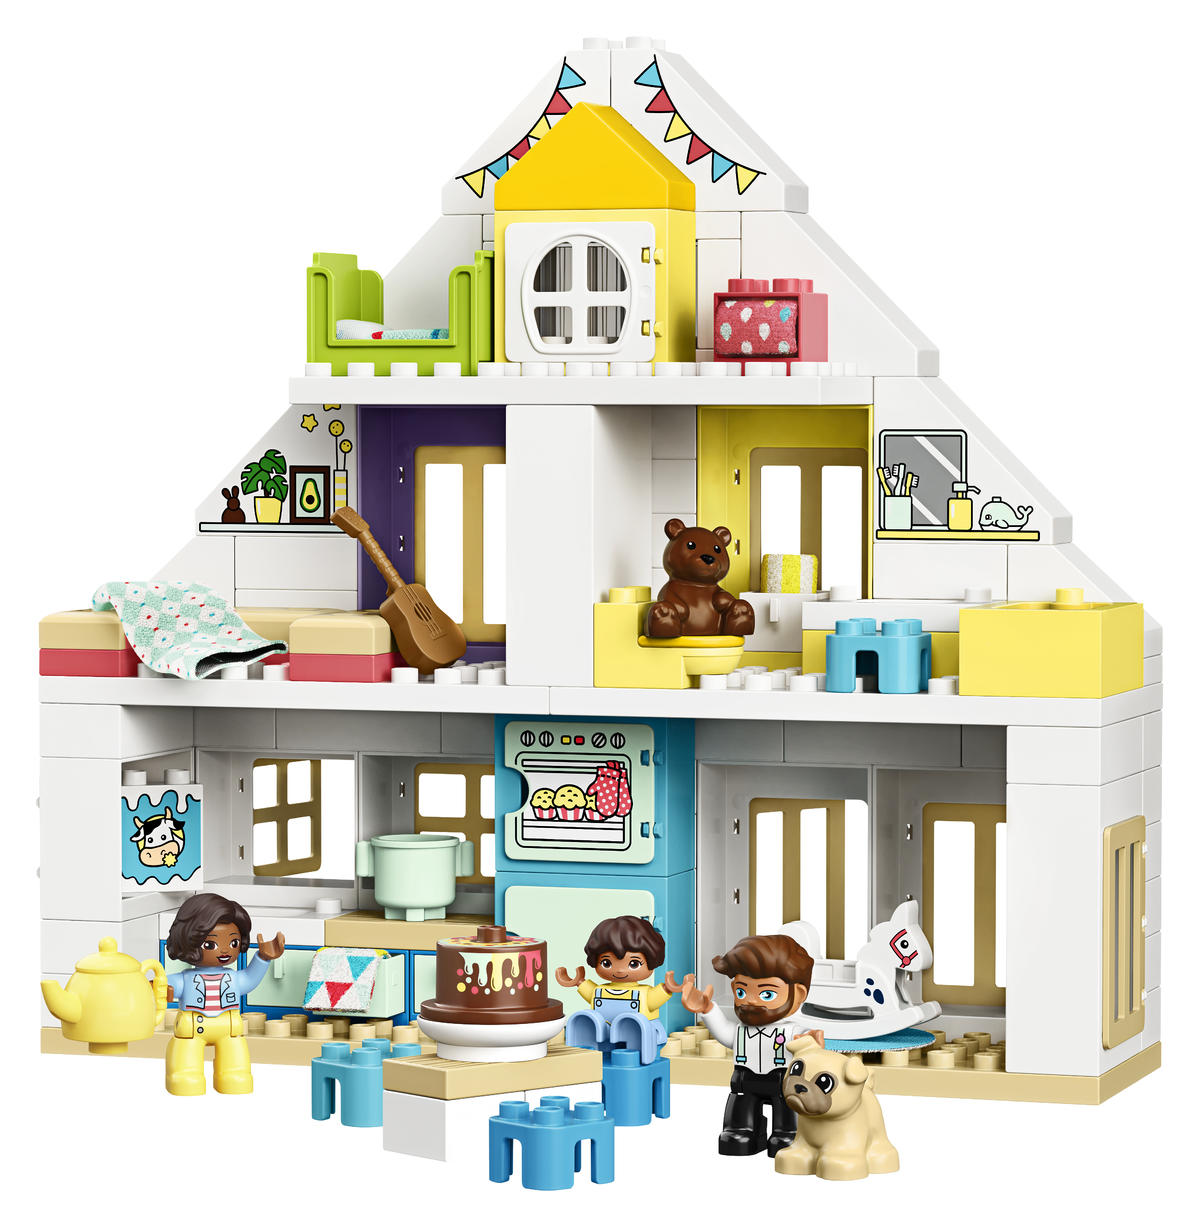 Wielofunkcyjny domek Lego Duplo